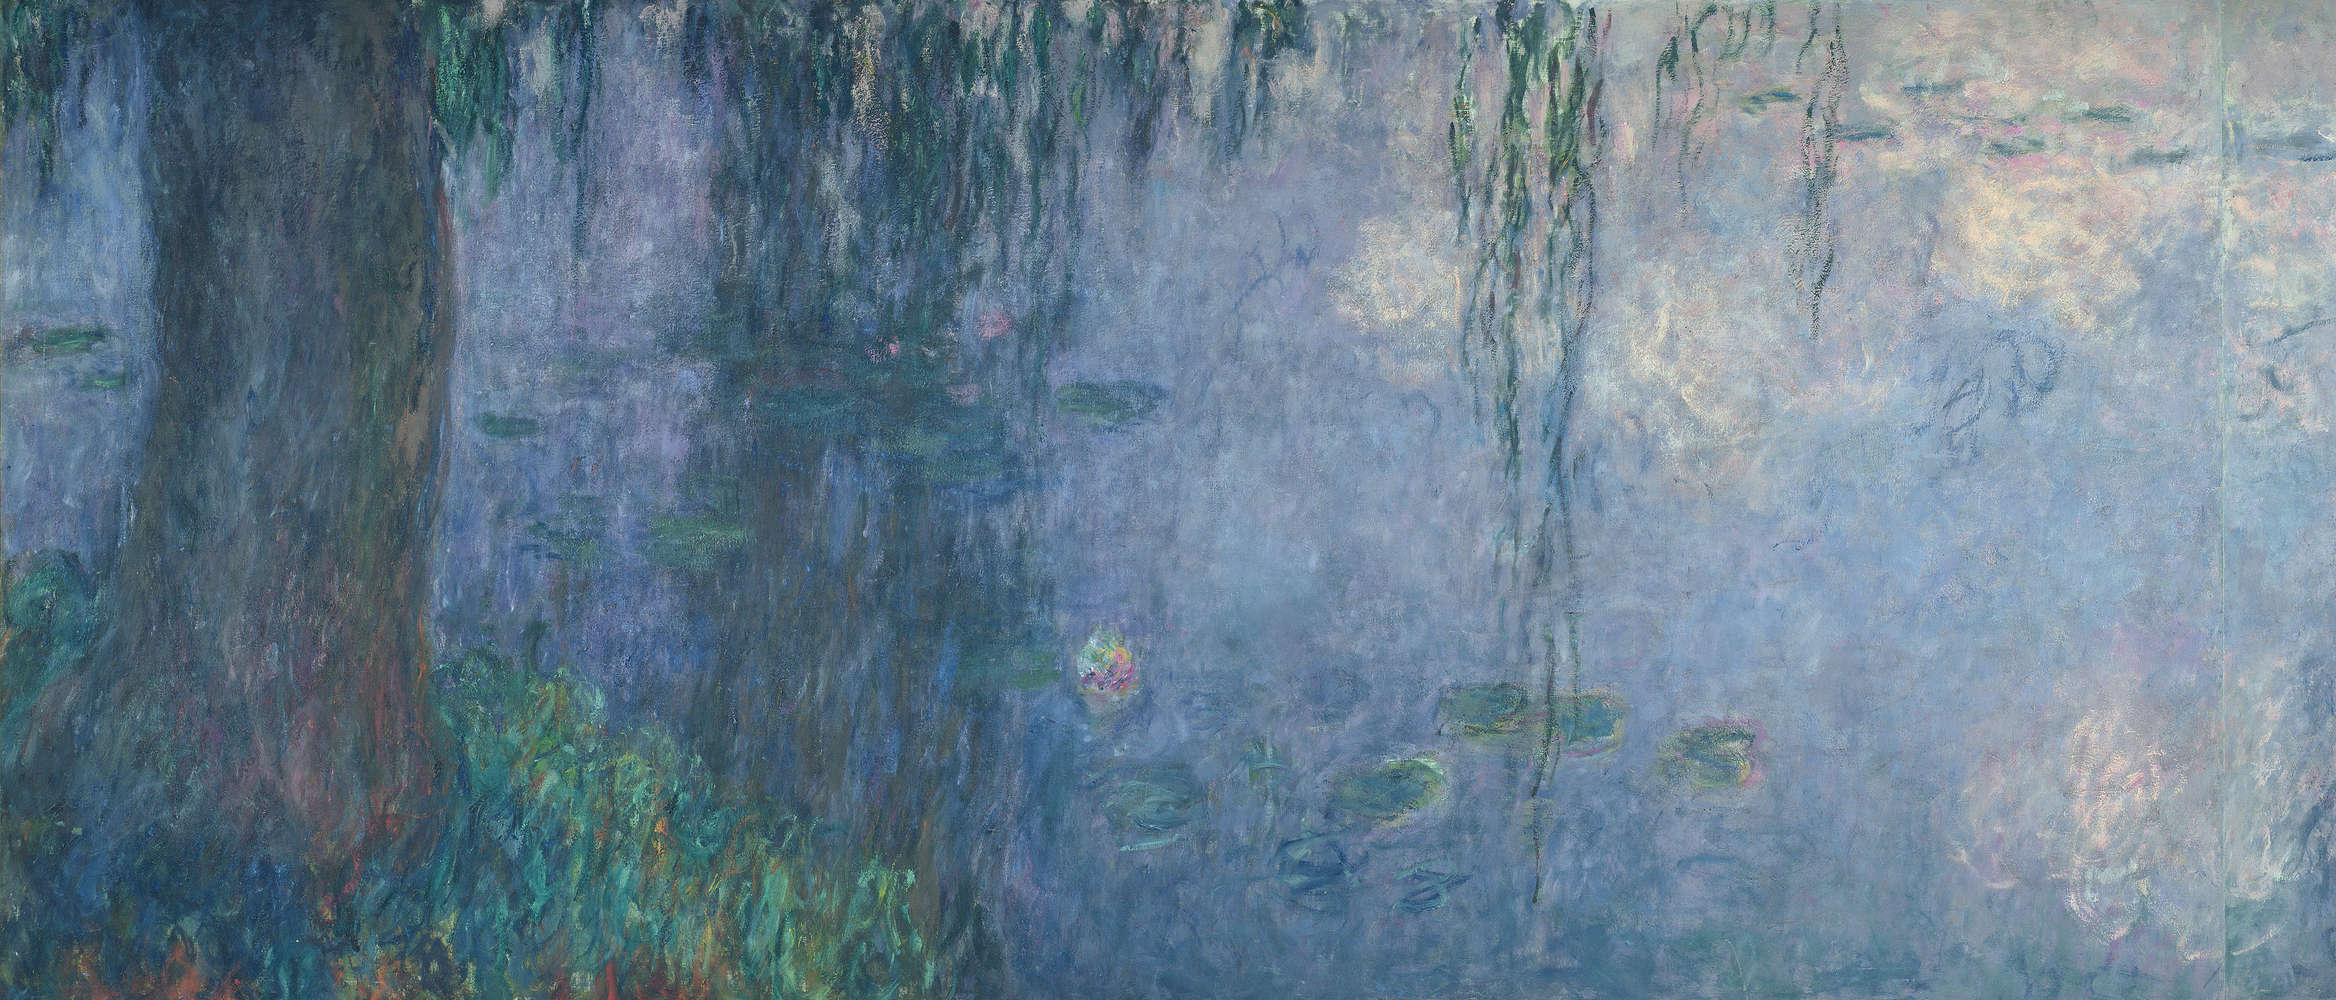             Mural "Nenúfares: Mañana con sauces llorones" detalle de Claude Monet
        